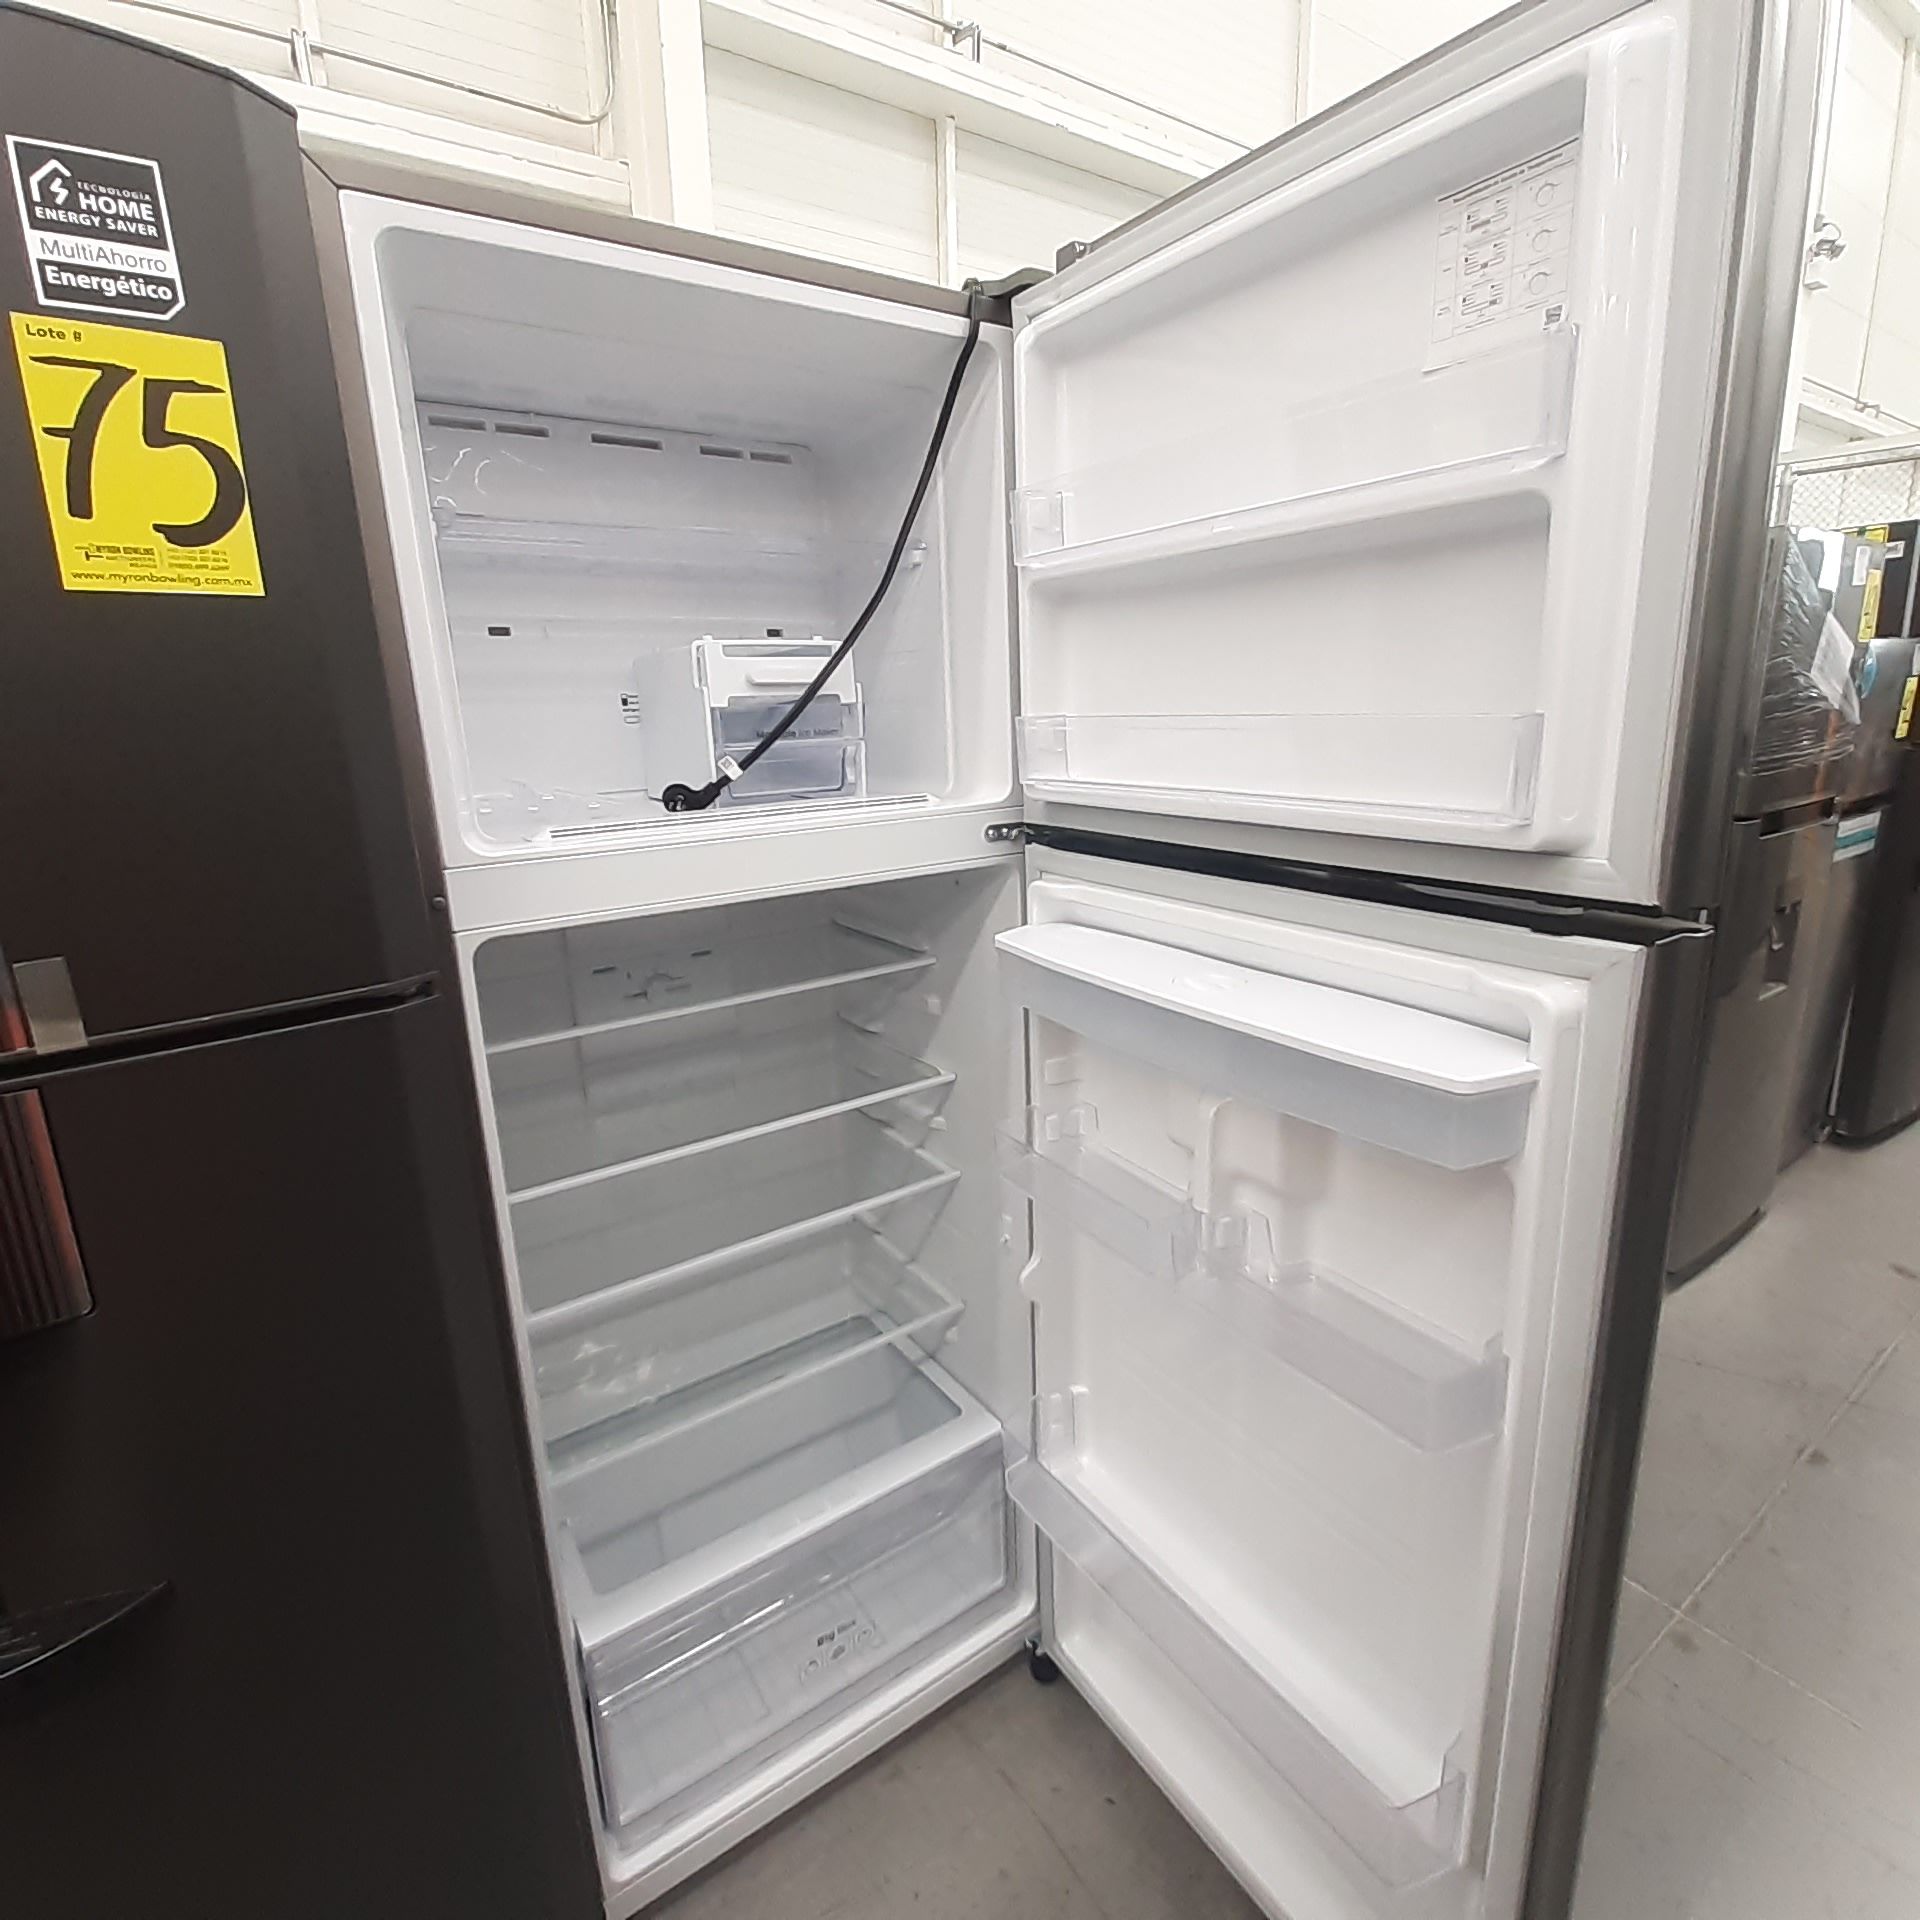 Lote De 2 Refrigeradores: 1 Refrigerador Marca Mabe, 1 Refrigerador Marca Winia, Distintos Modelos - Image 4 of 23